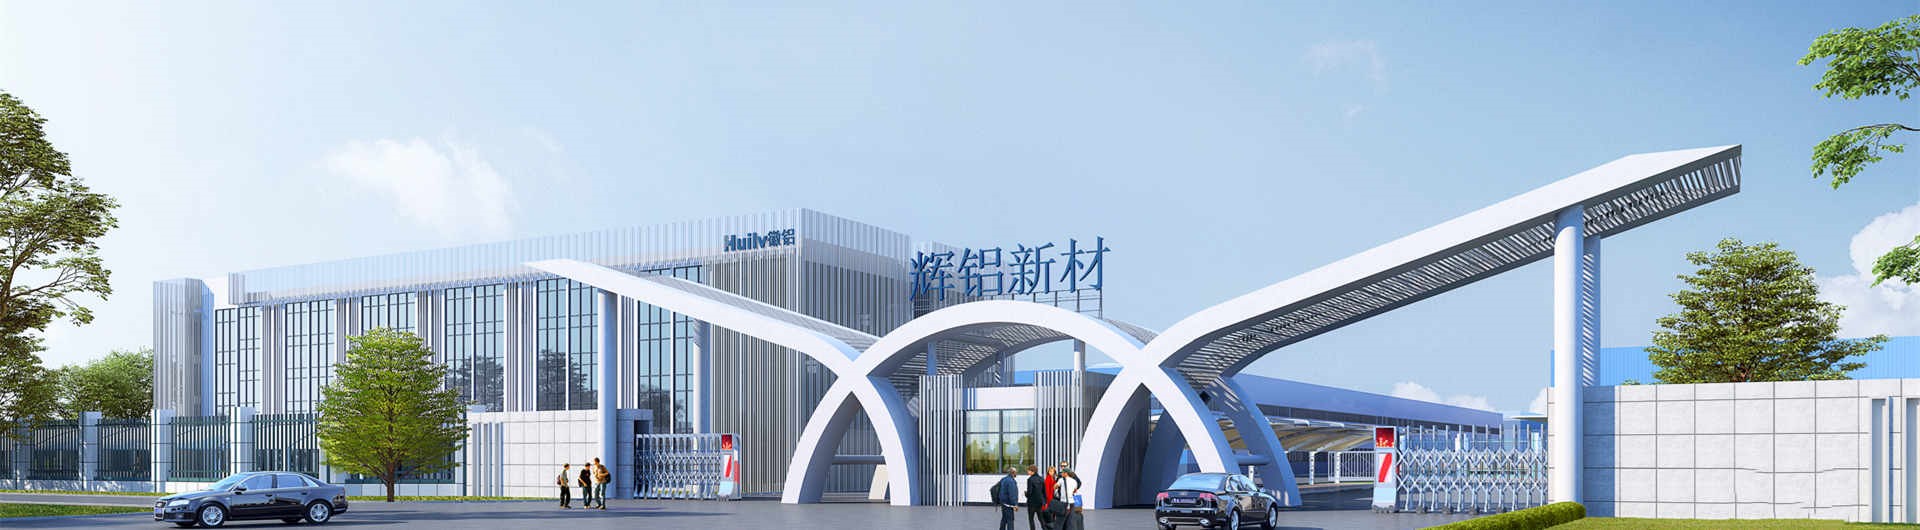 辉龙铝业计划收购其子公司安徽辉龙集团27%的股权